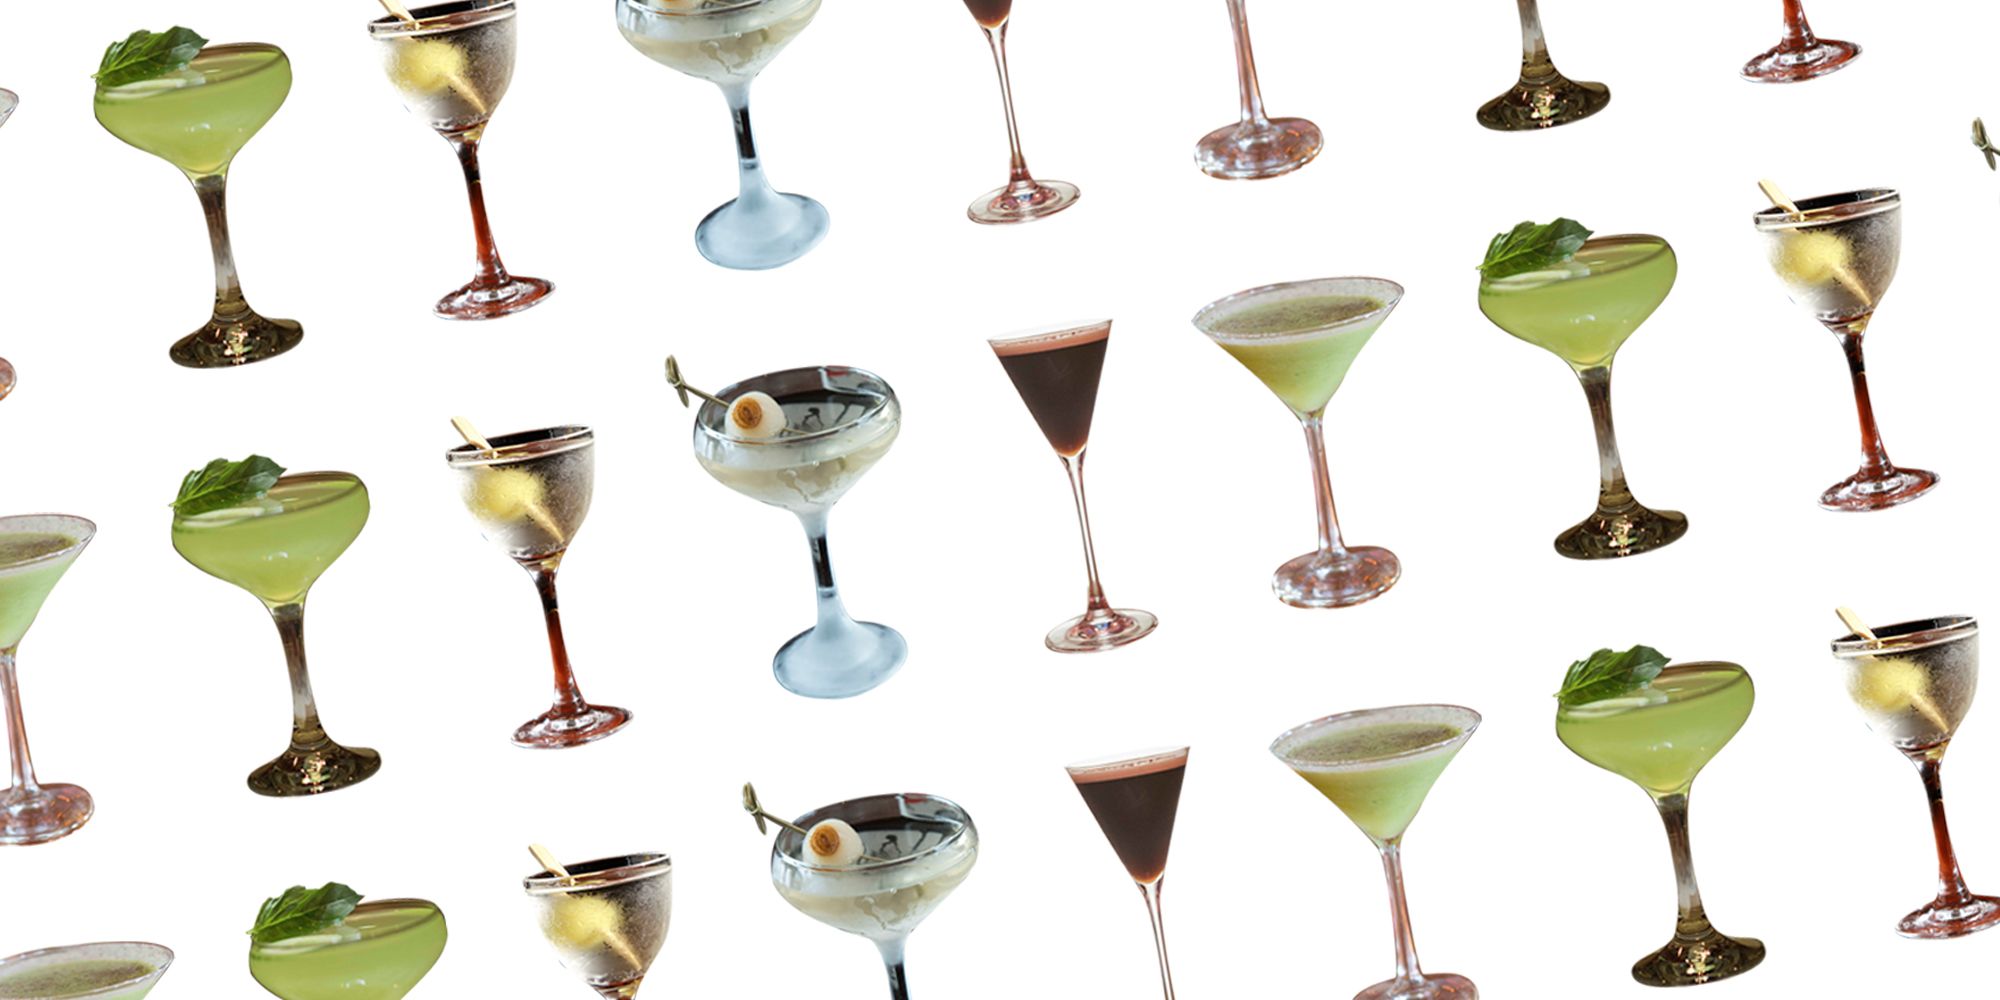 26 Martini - To Make A Martini Cocktail Gin or Vodka